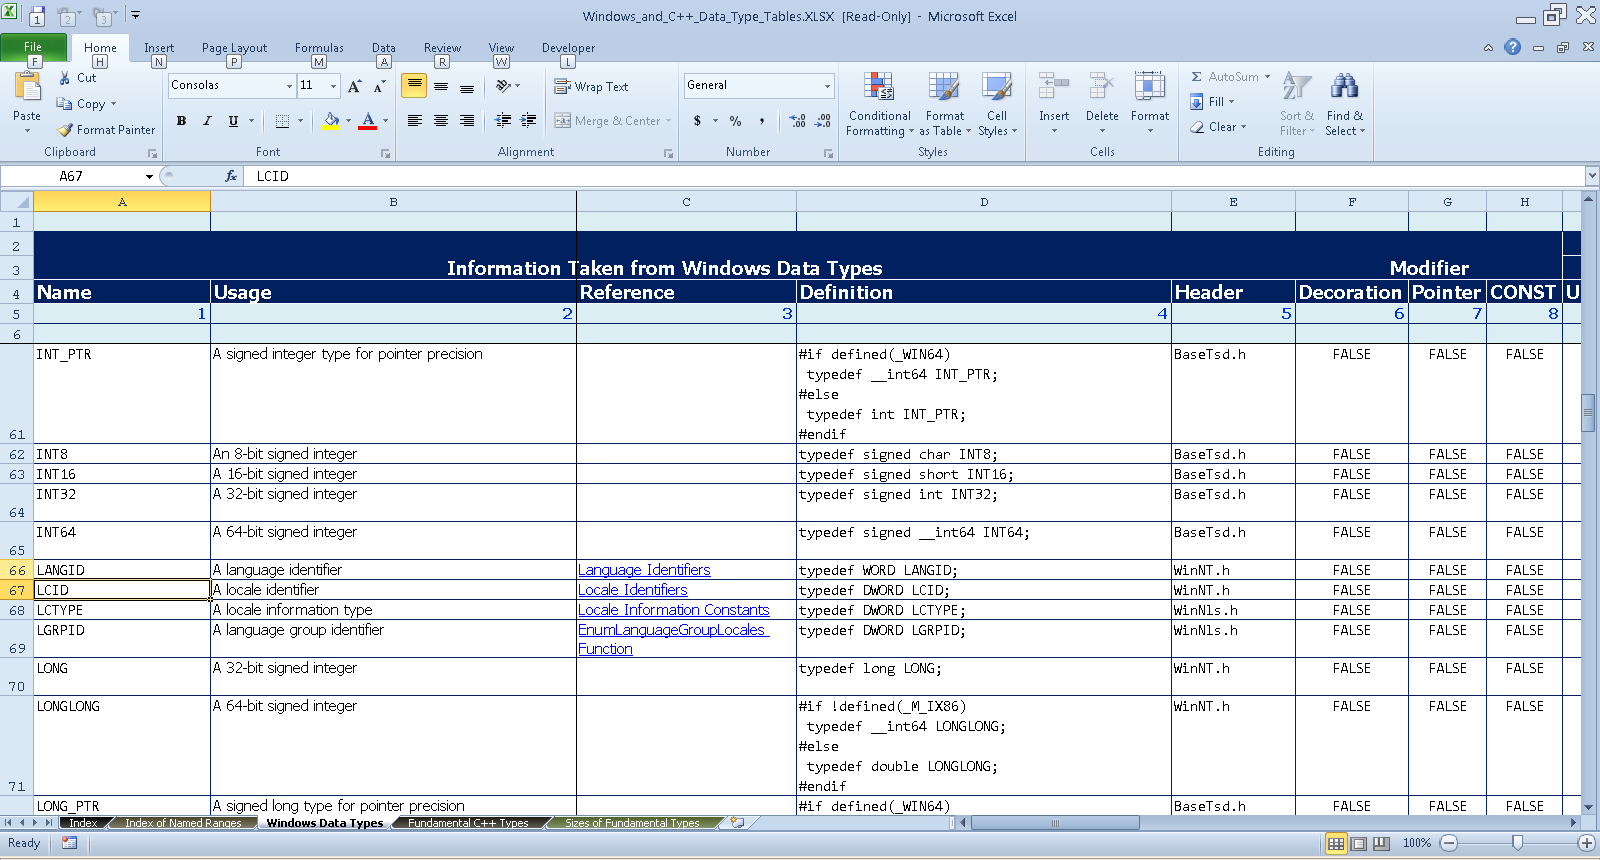 Upper Left Corner of Windows Data Types Worksheet